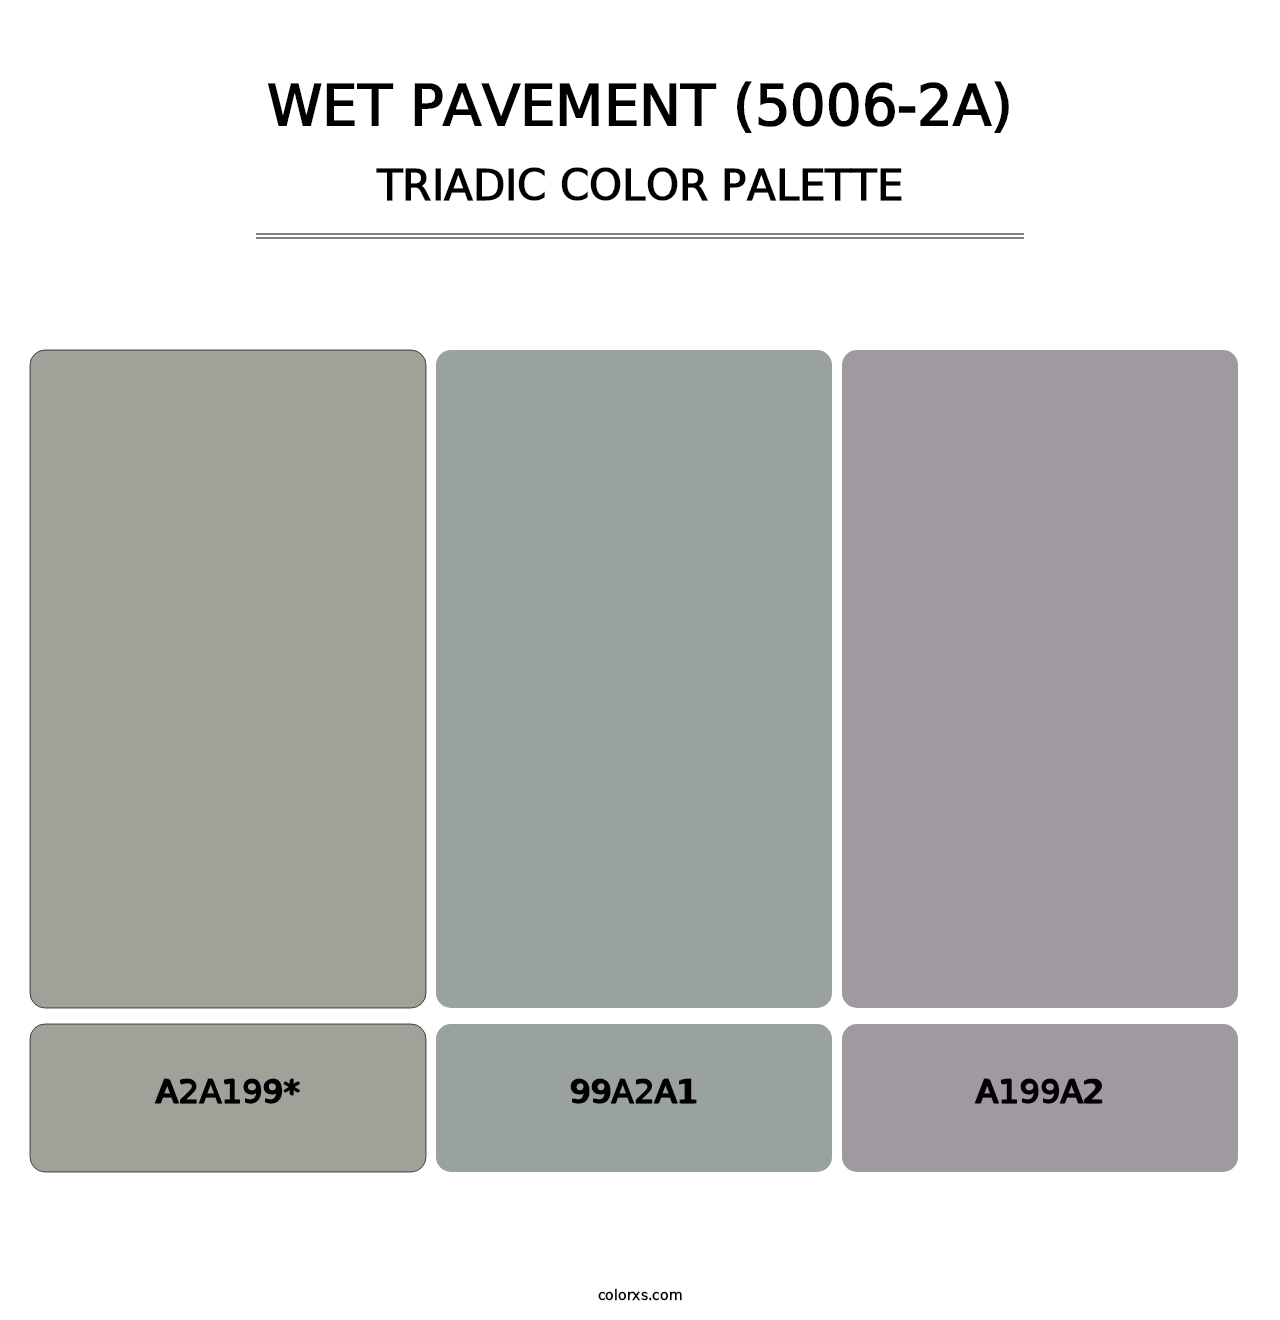 Wet Pavement (5006-2A) - Triadic Color Palette